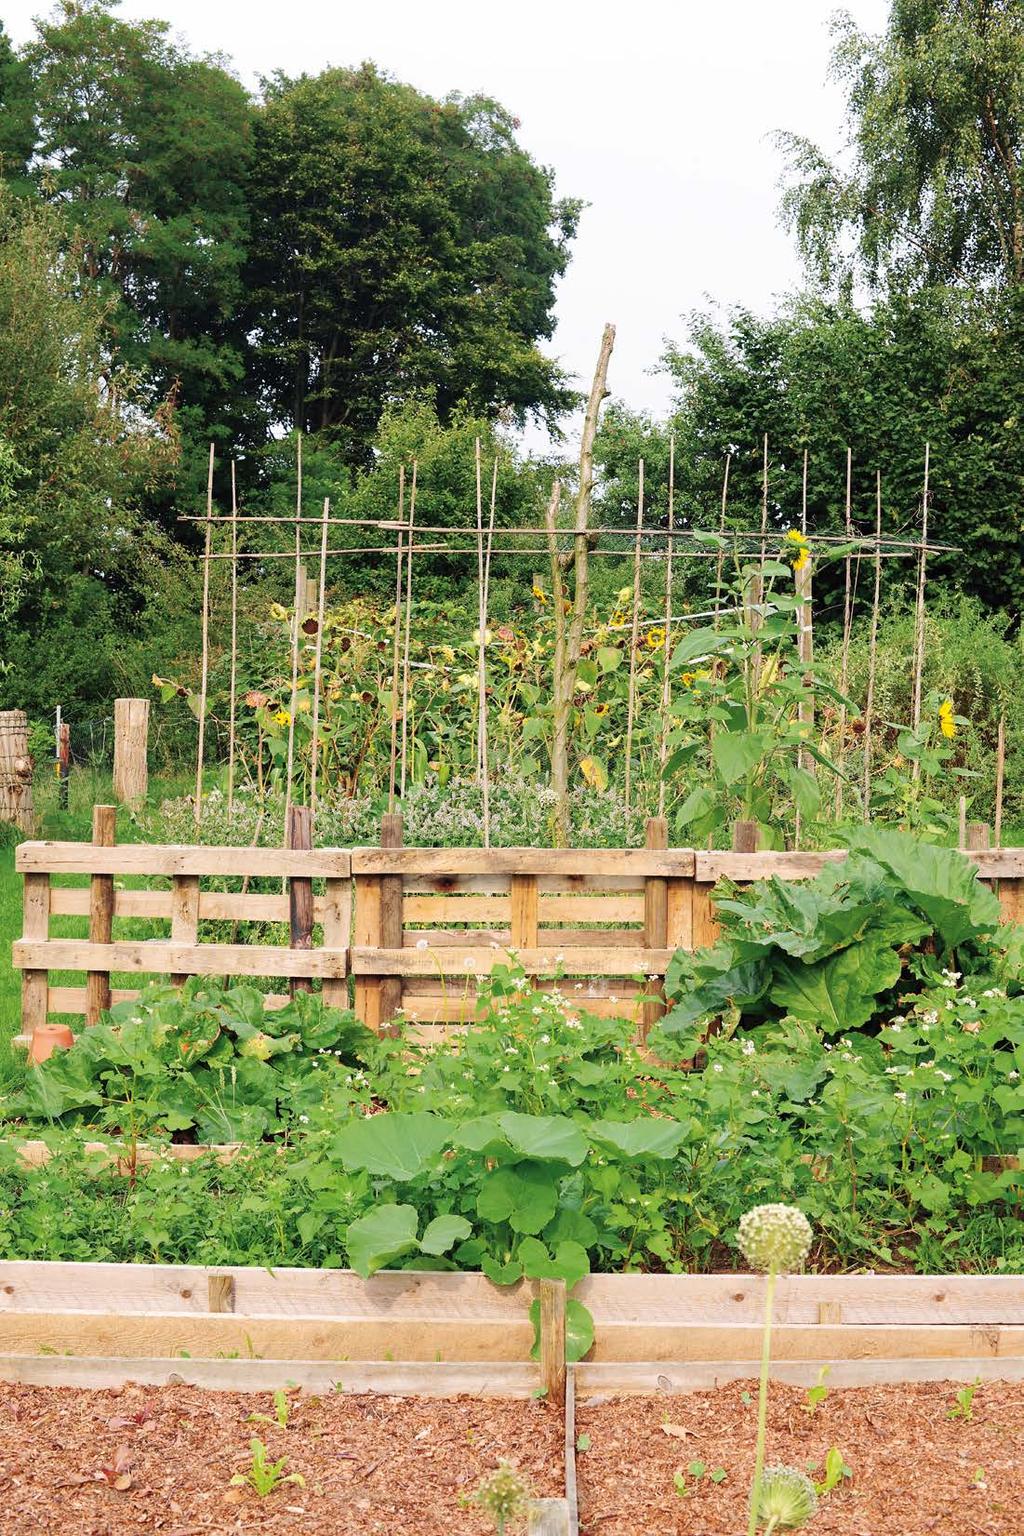 Graat neemt de tuin voor haar rekening en werkt biologisch en ecologisch. Compost en hummus maakt ze over het algemeen zelf. Bestrijdingsmiddelen? Daar doet ze niet aan.